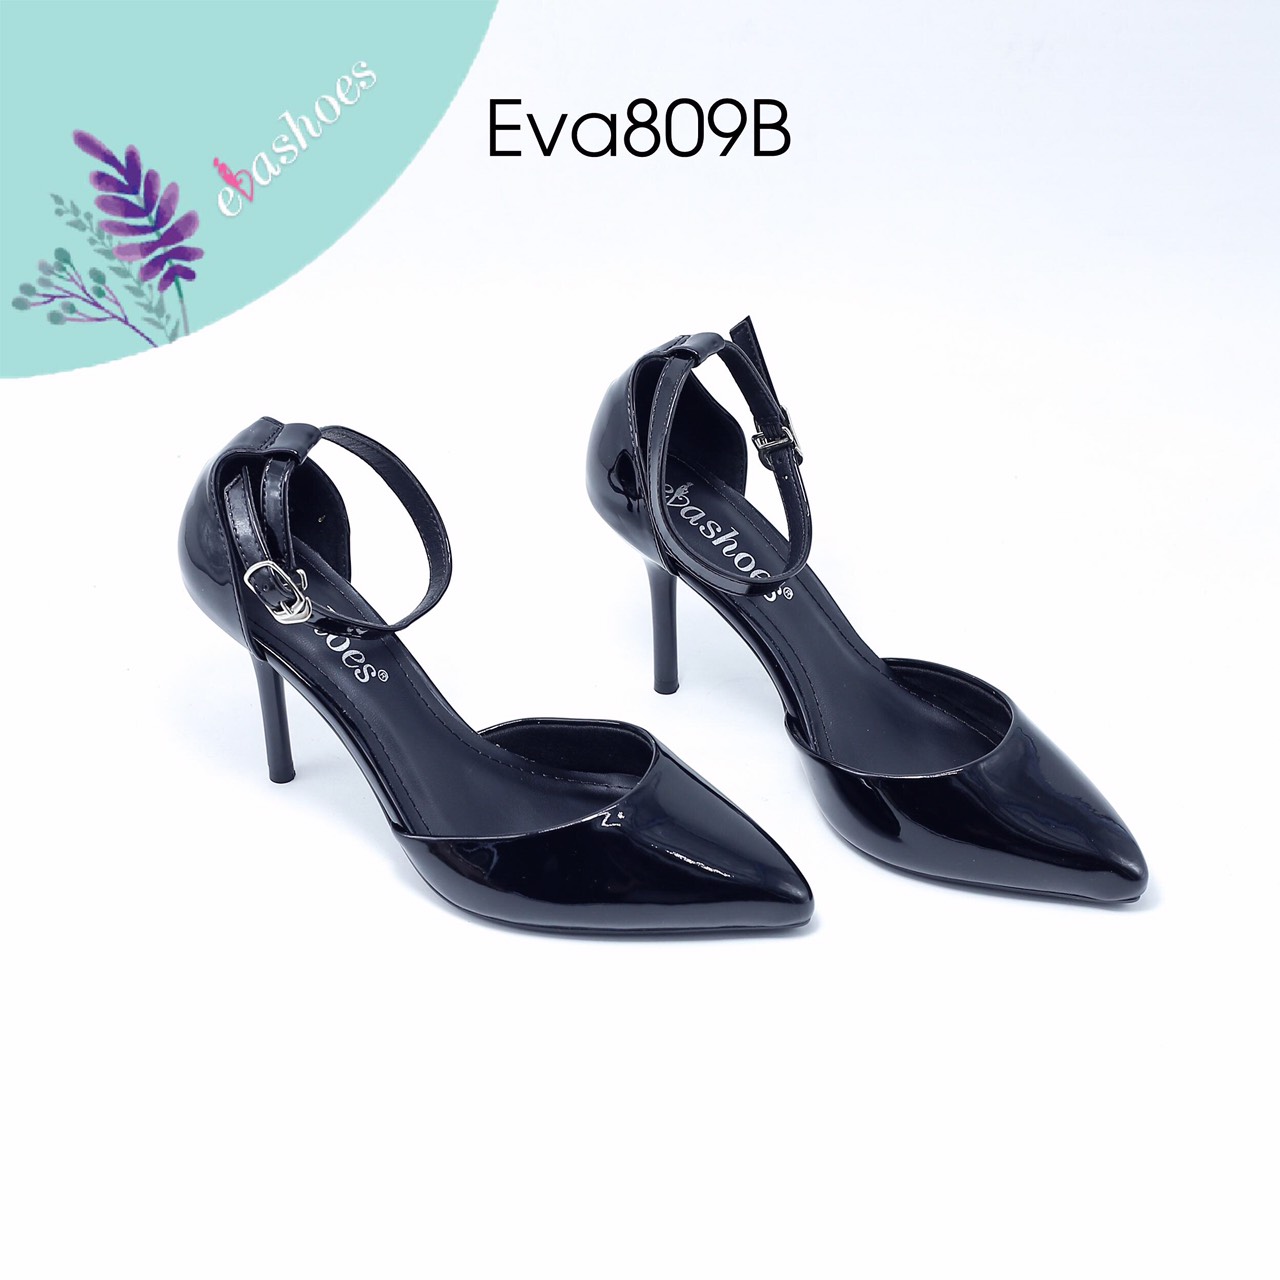 Giày cao gót EVA809B